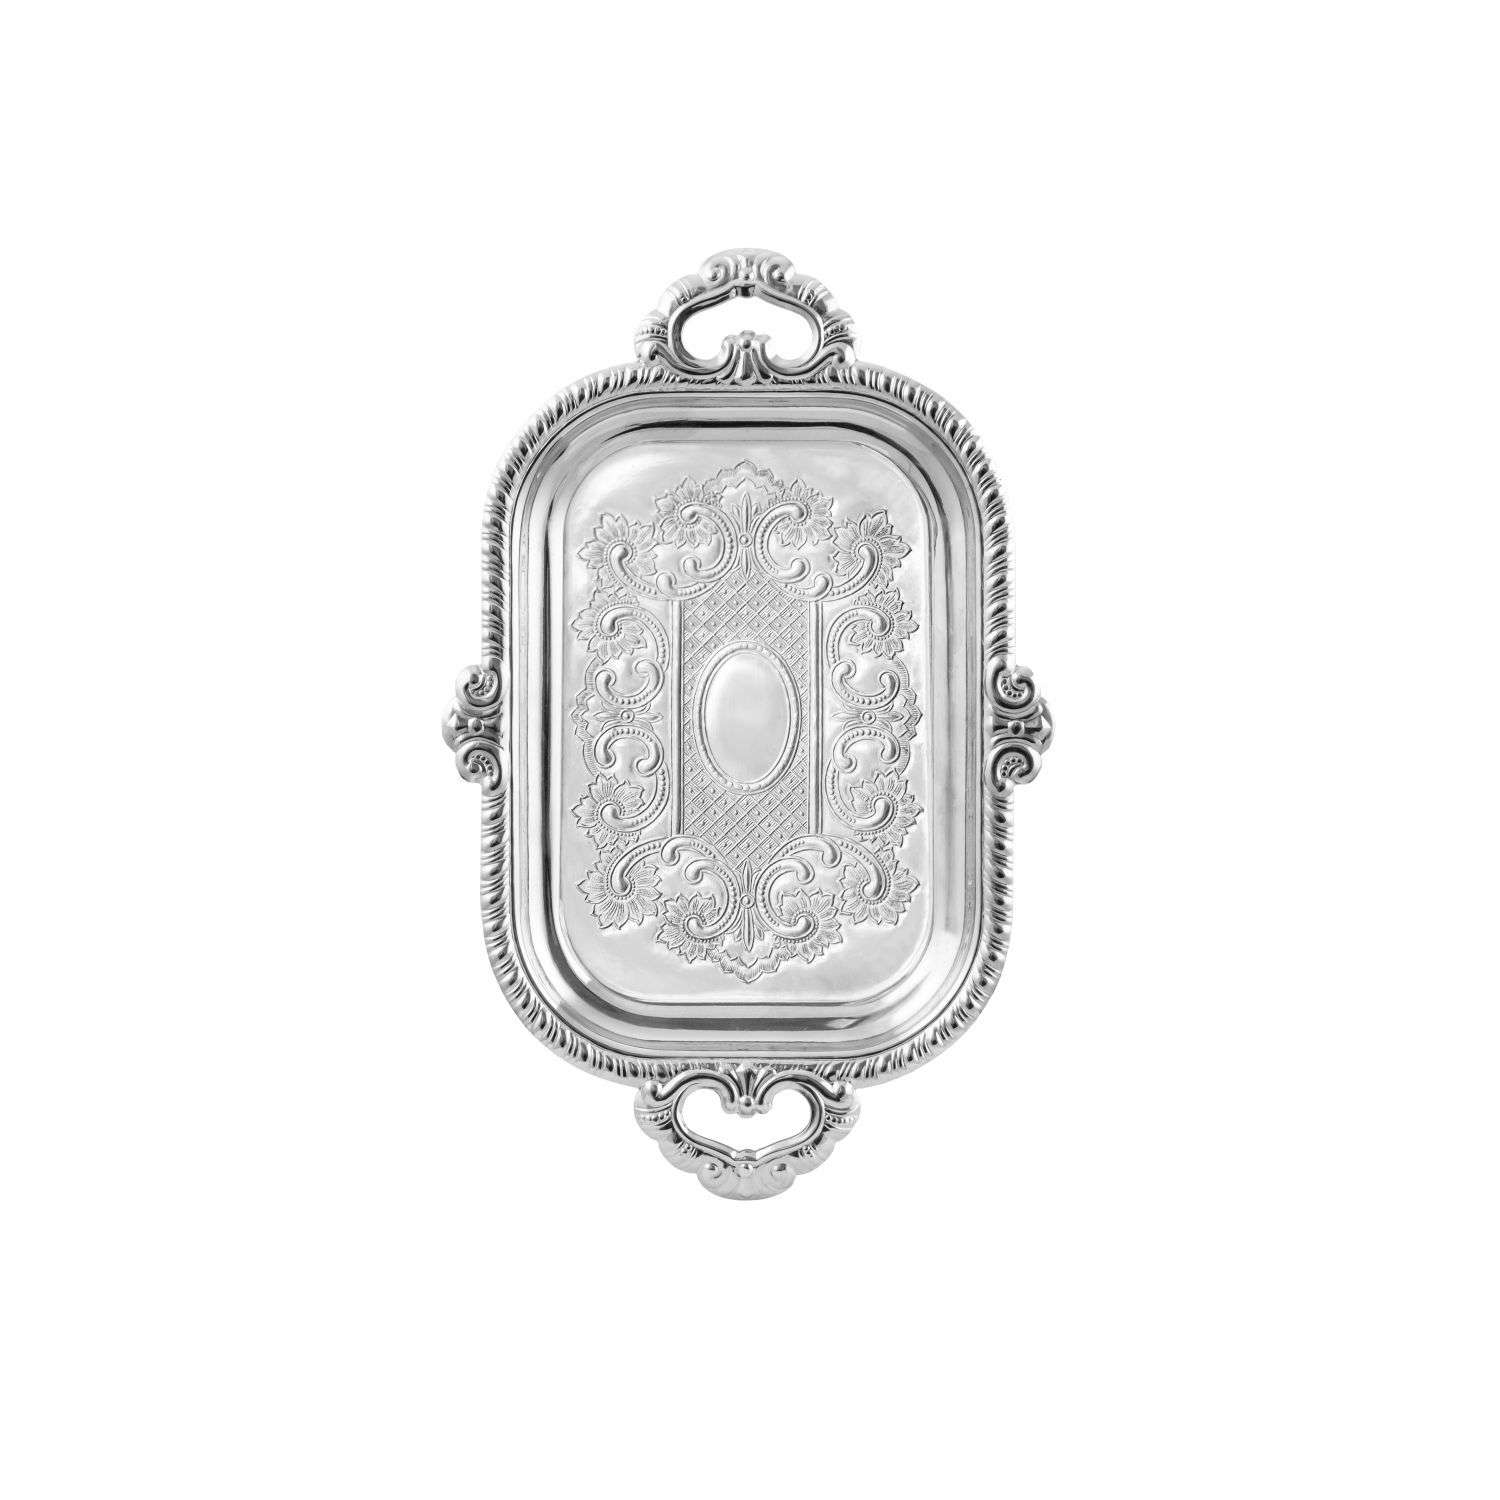 Поднос Кольчугинский мельхиор с гравированным рисунком никелированный - фото 1